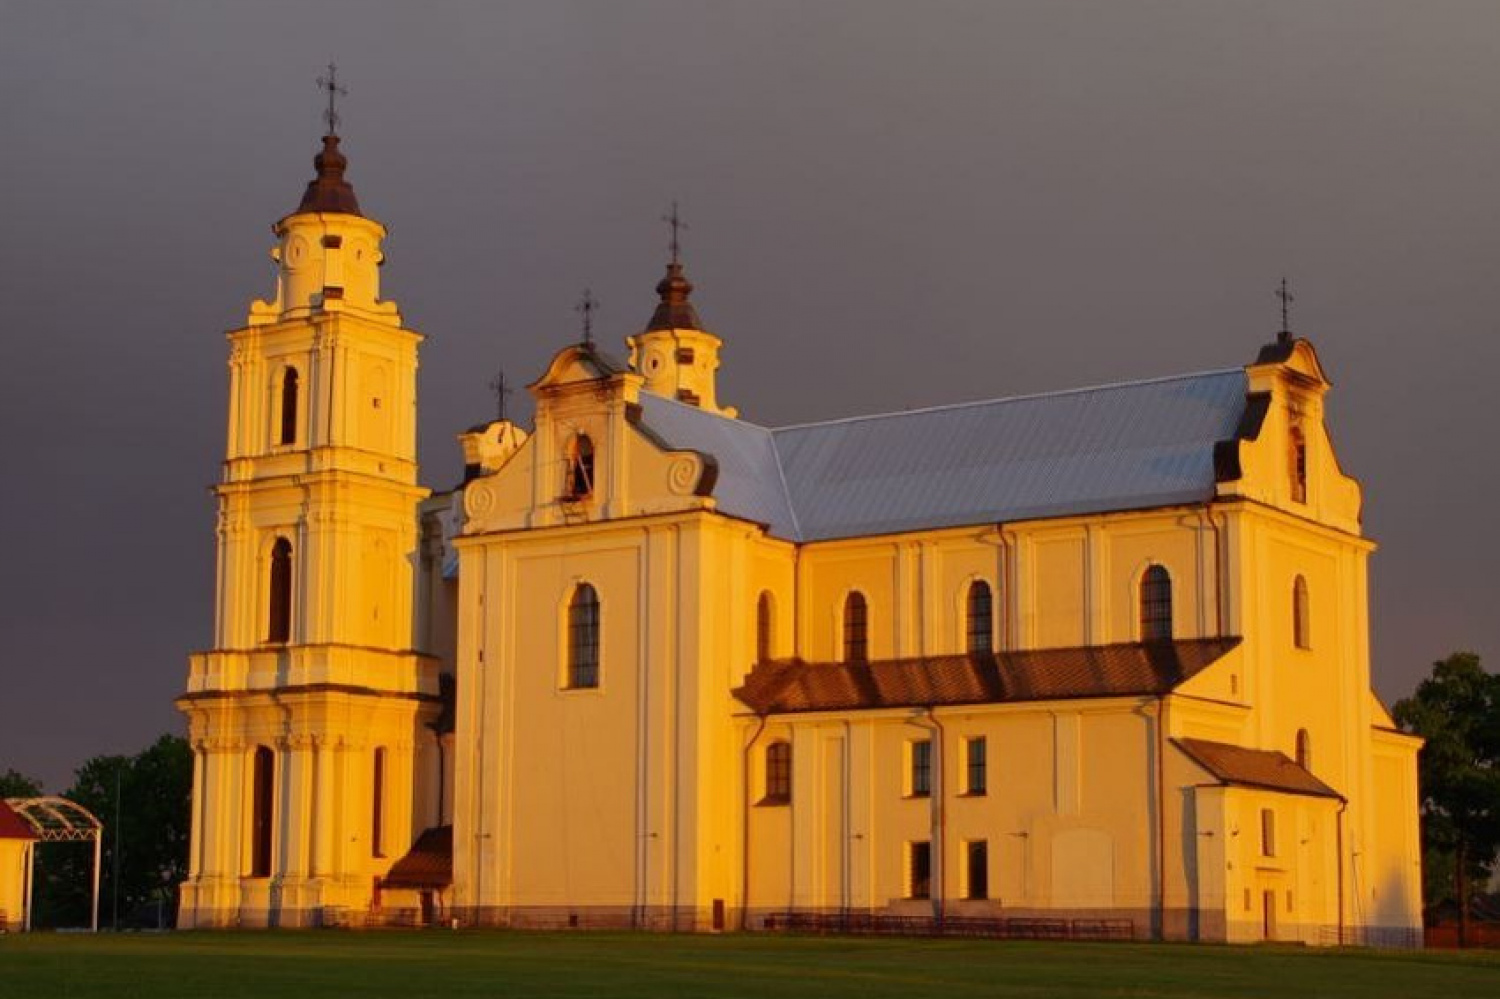 Будславский костел открыли для посещения - идет подготовка к фесту